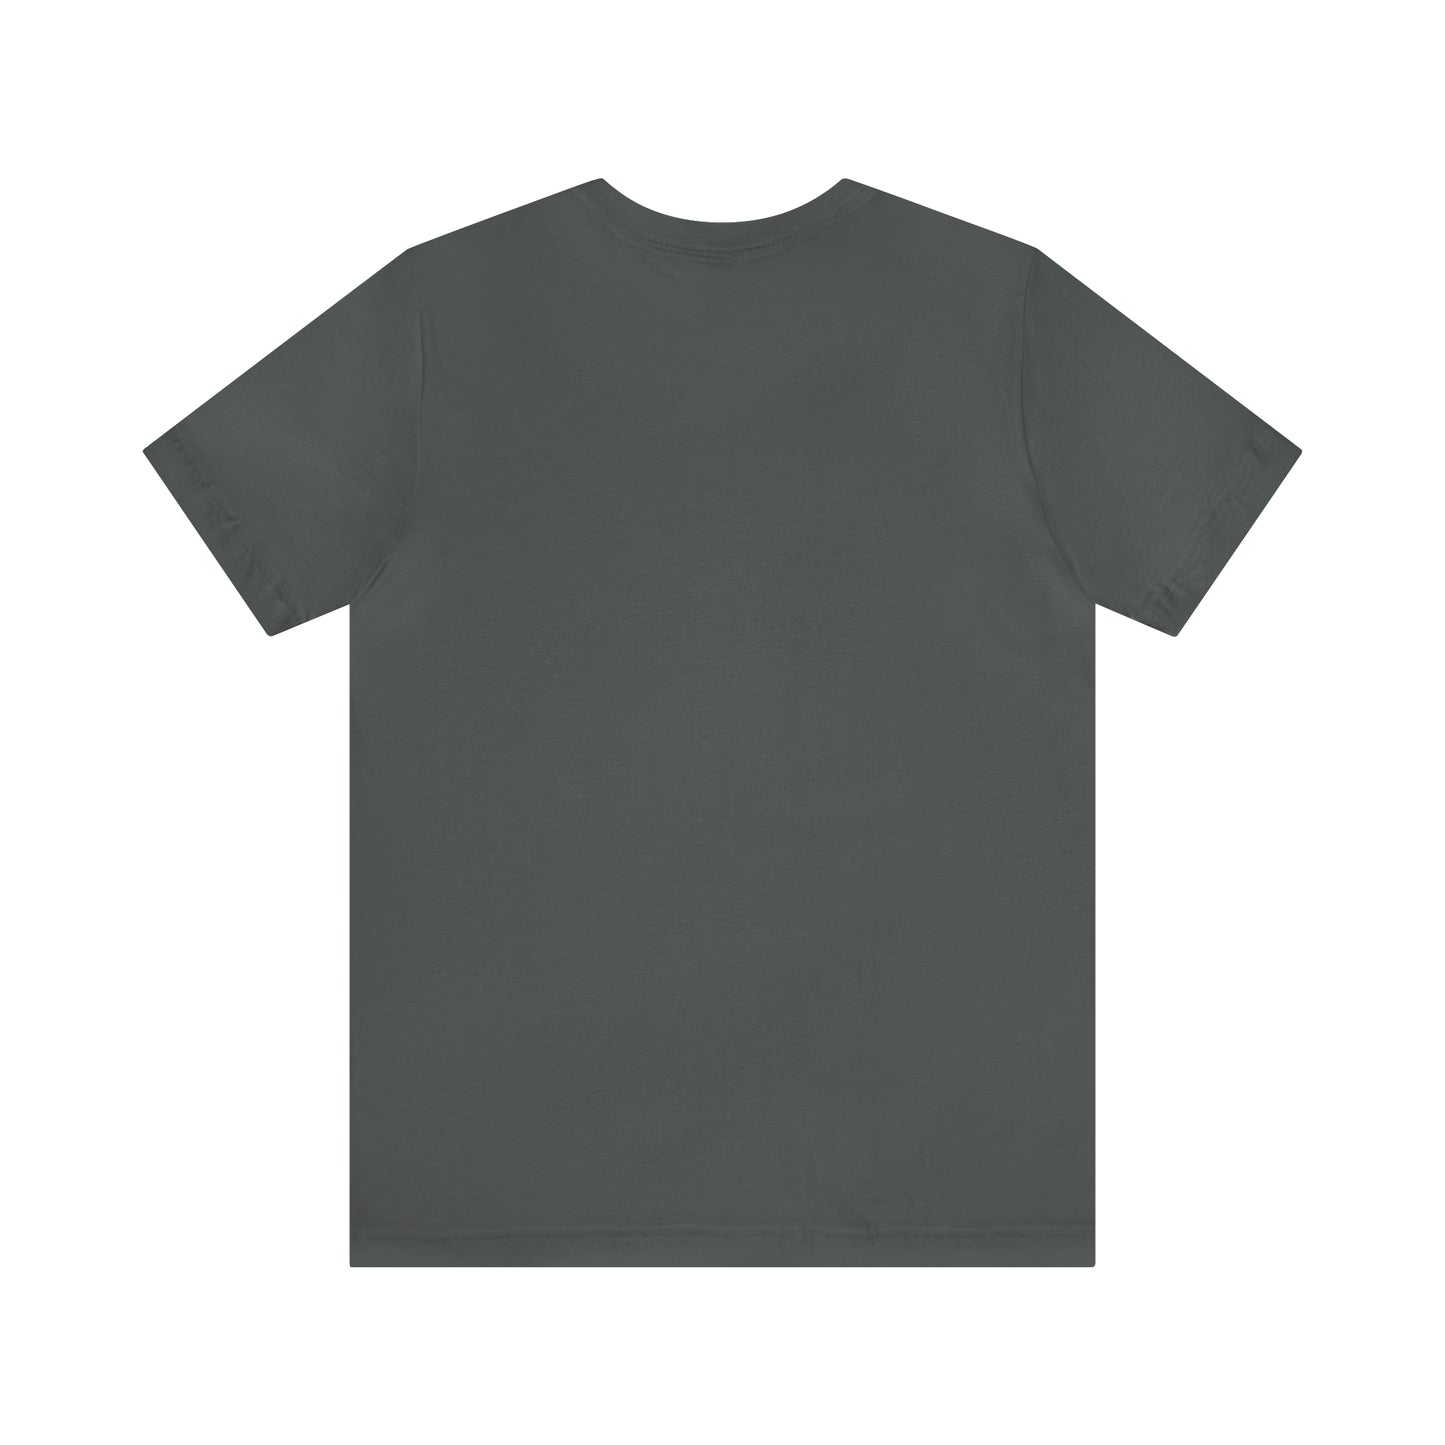 1$A-Insane! T Shirt Unisex Jersey Short Sleeve Tee